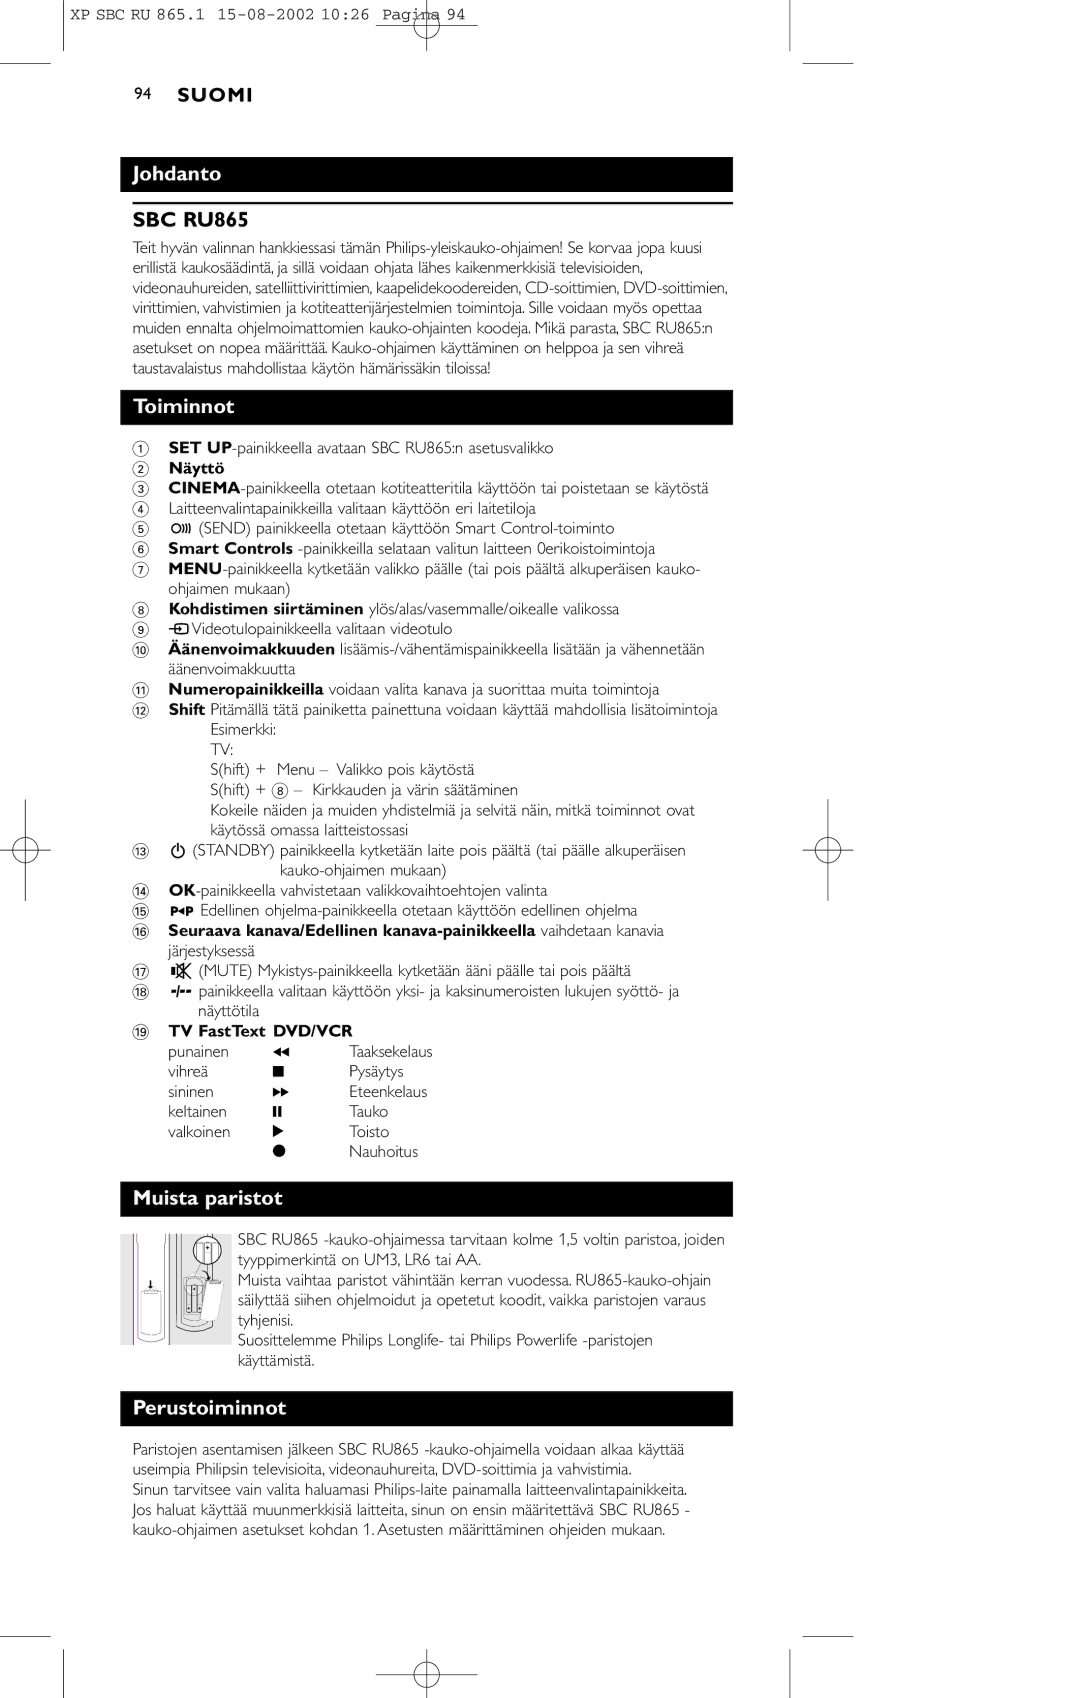 Philips SBC RU 865/00 manual Johdanto, Toiminnot, Muista paristot, Perustoiminnot 